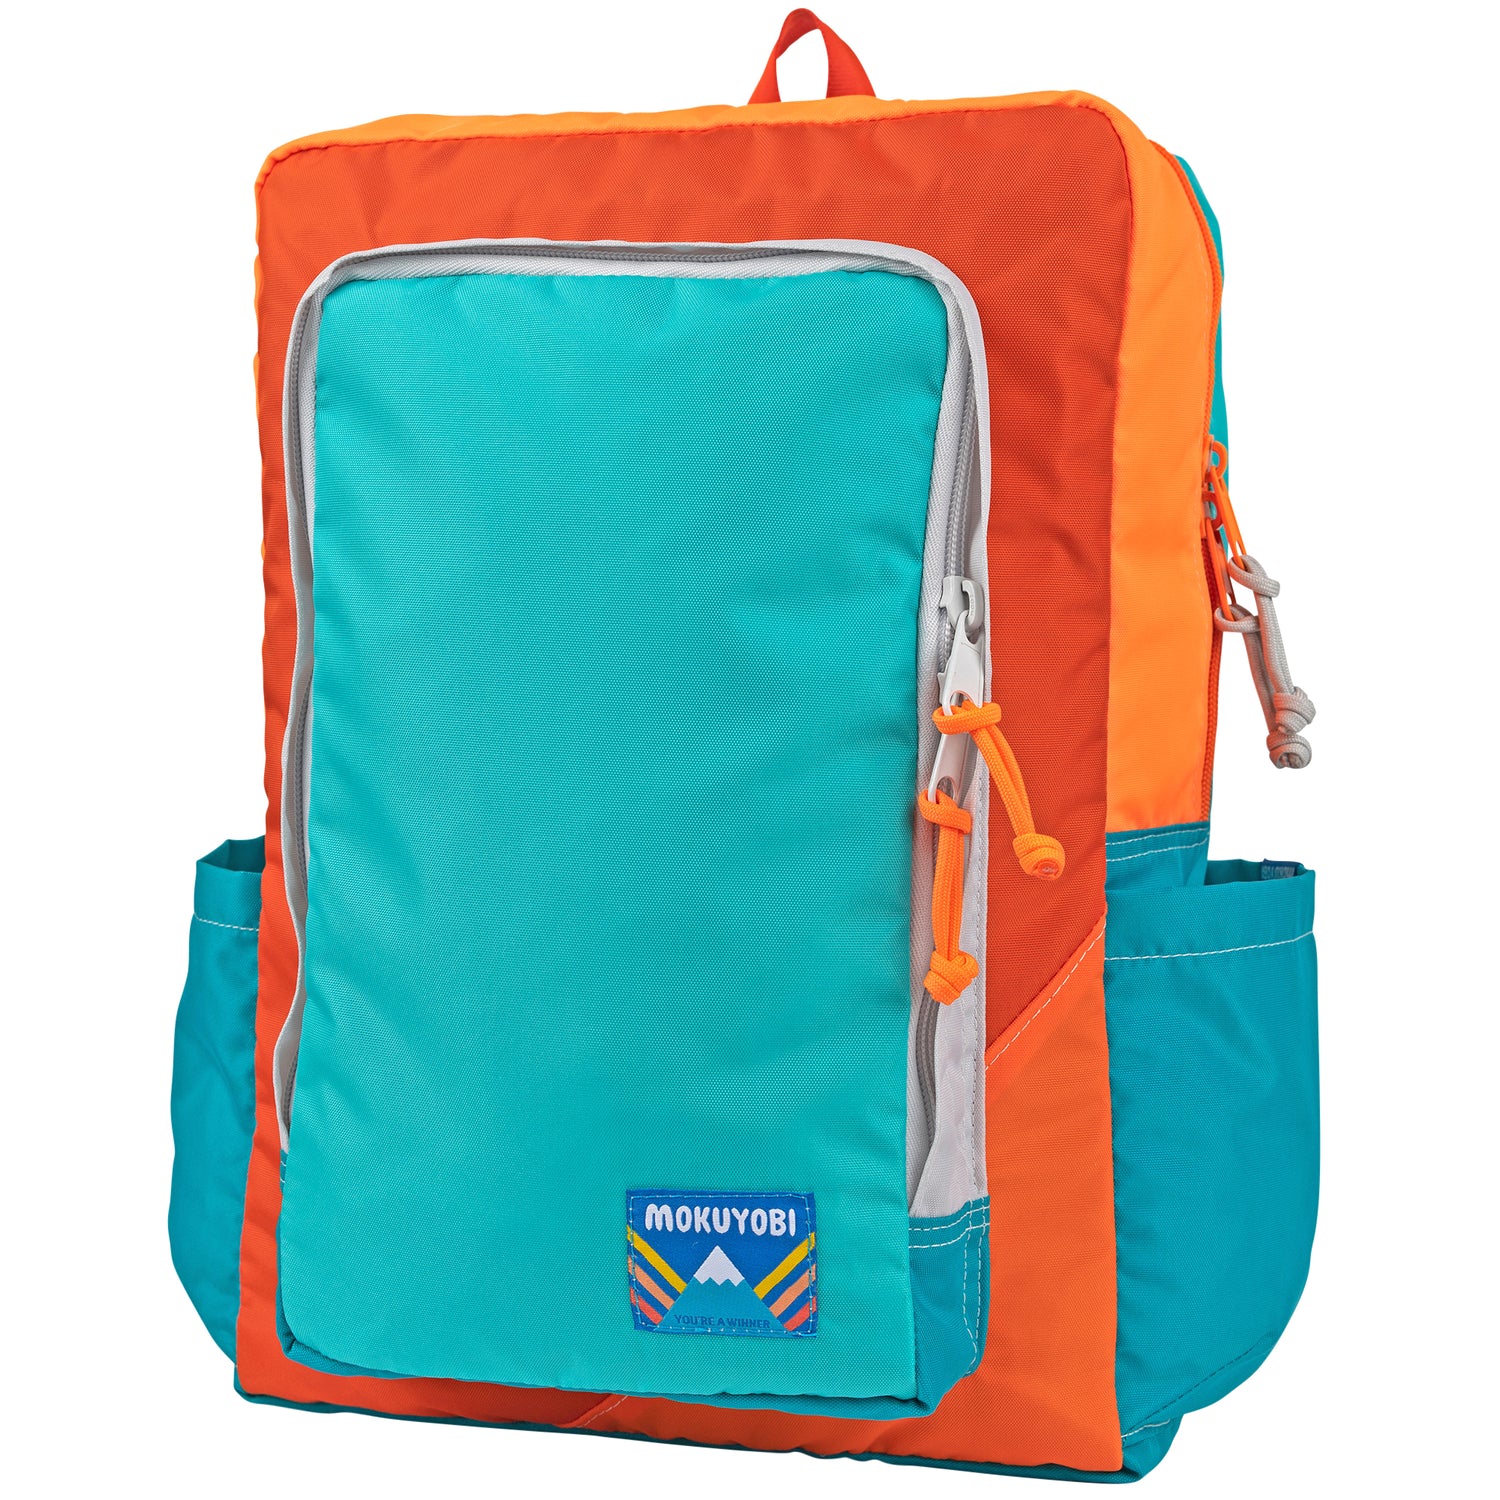 Warm-Up Flyer Backpack